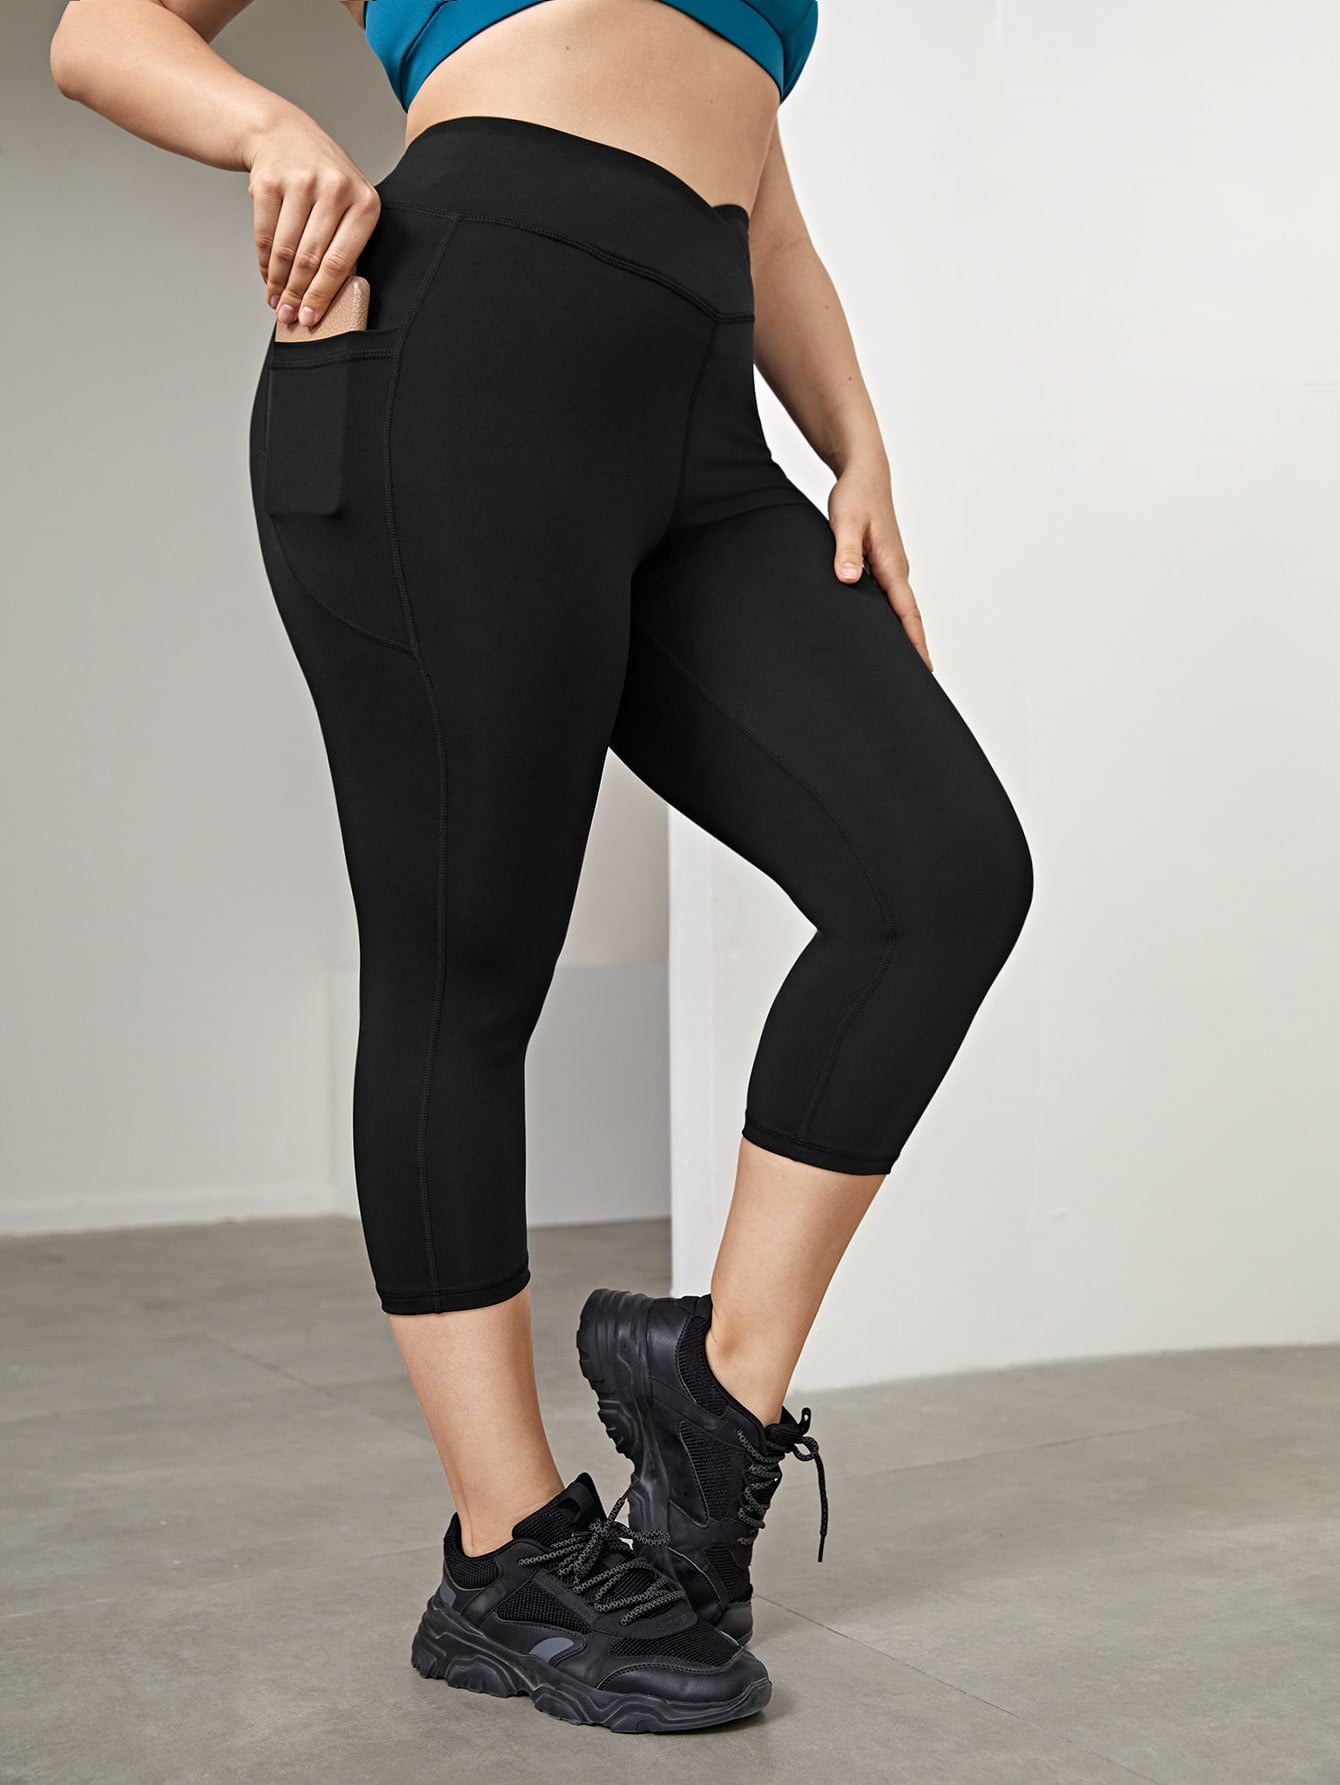 Hanes Womens Plus 2XL XXL Solid Black Capri Lounge Pants Bottoms Activewear 